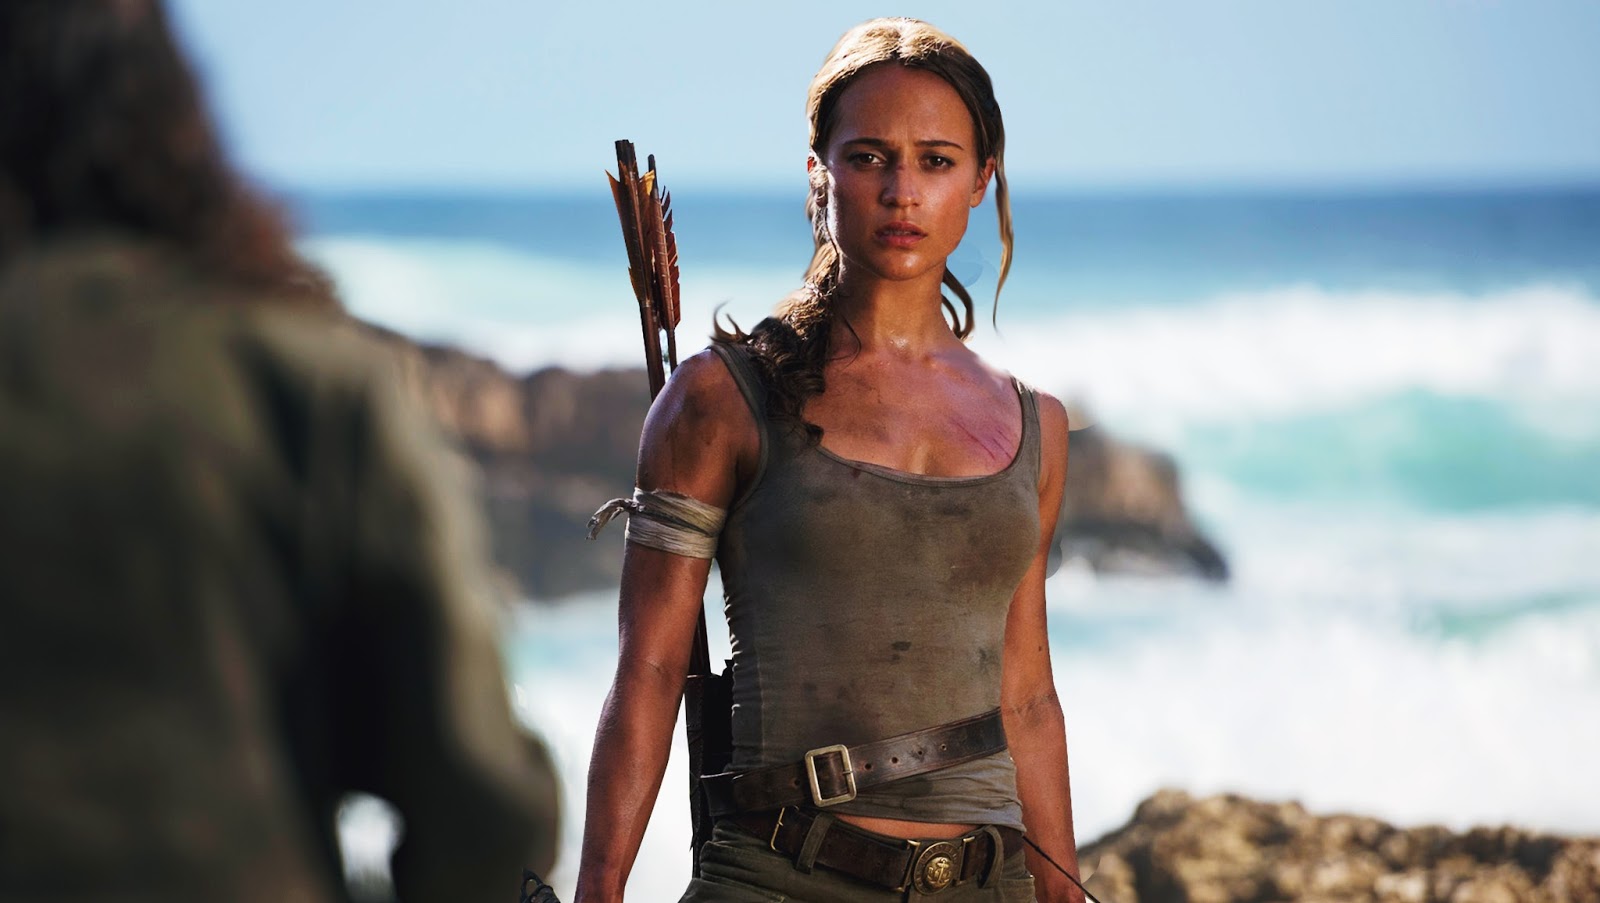 Amazon створить кінематографічний всесвіт Лари Крофт: студія працює над фільмом та серіалом за франшизою відеоігор Tomb Raider